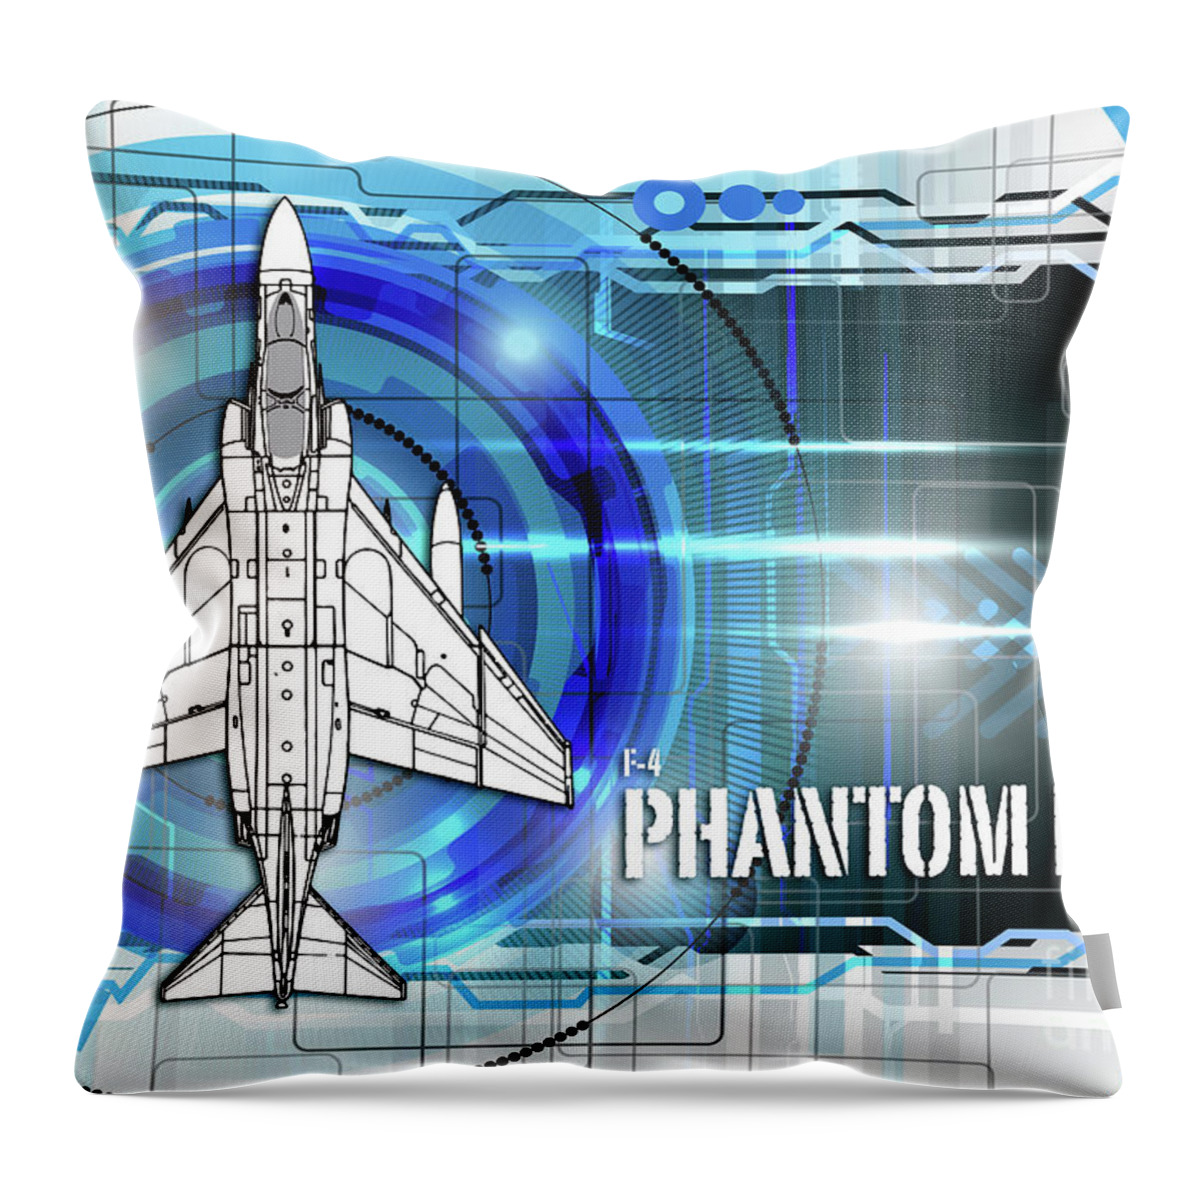 F4 Throw Pillow featuring the digital art F4 Phantom Blueprint by Airpower Art